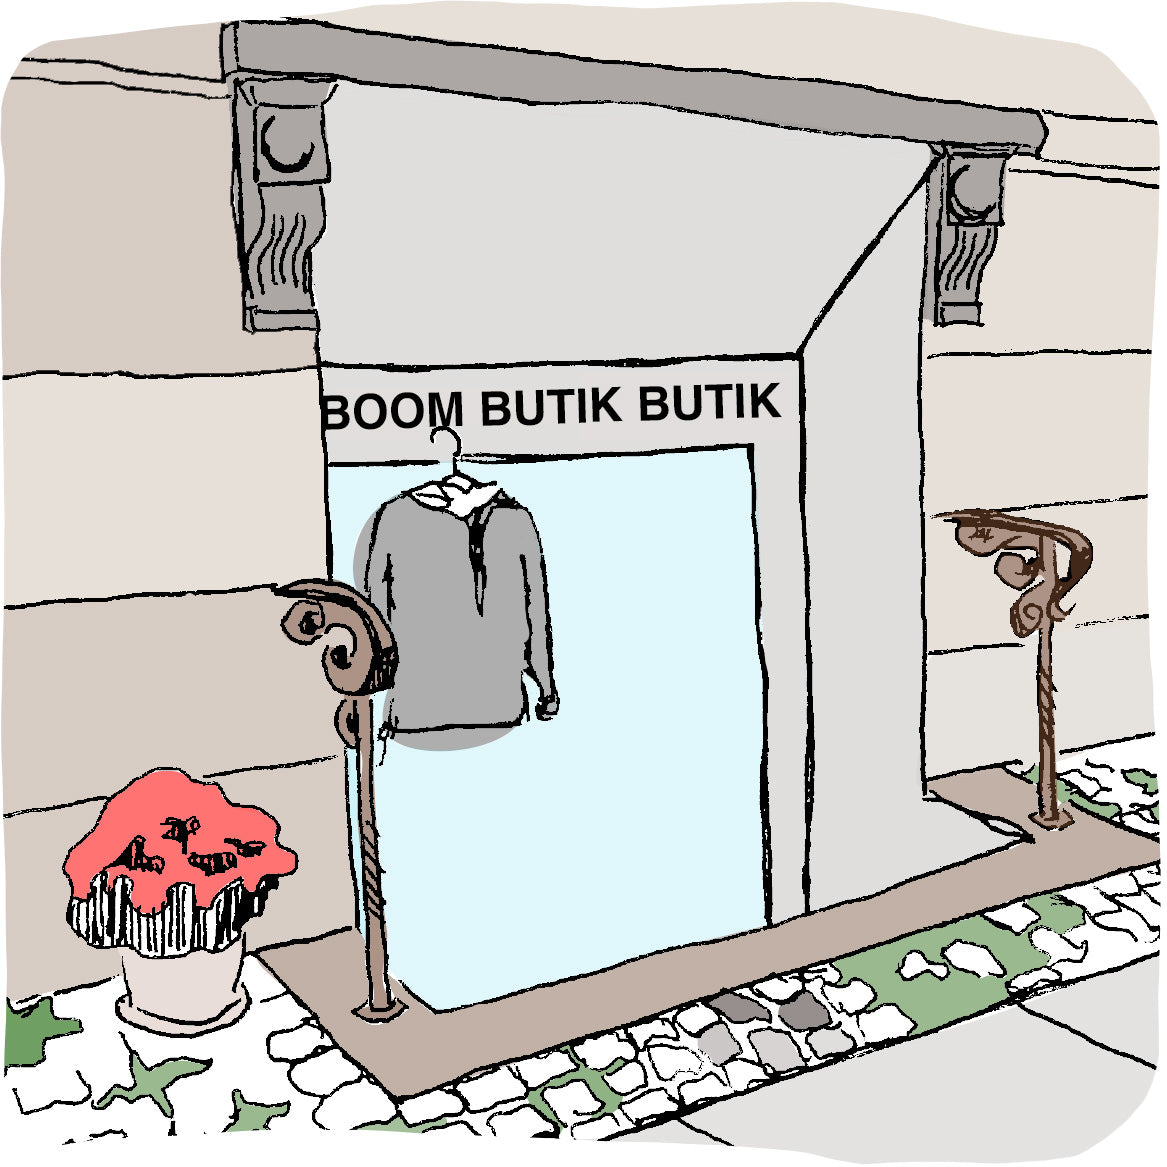 Tegning af Boom Butik Butik